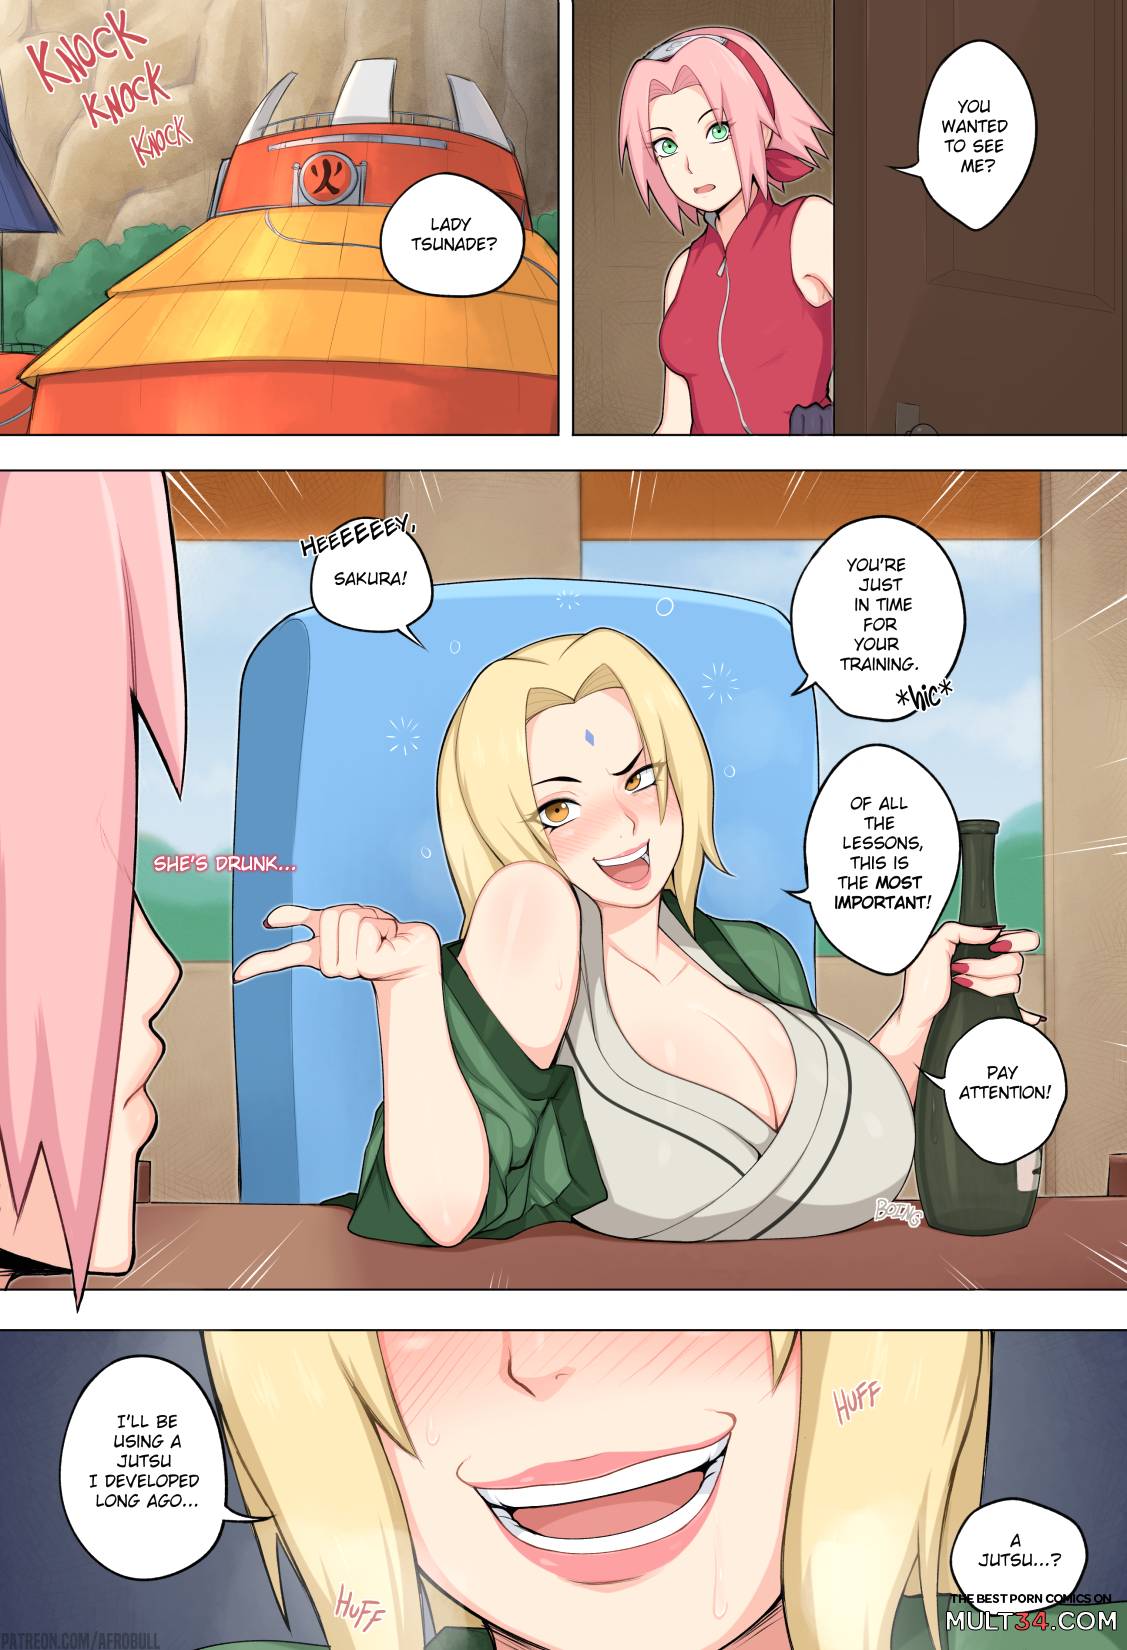 Sakura and tsunade porn comics